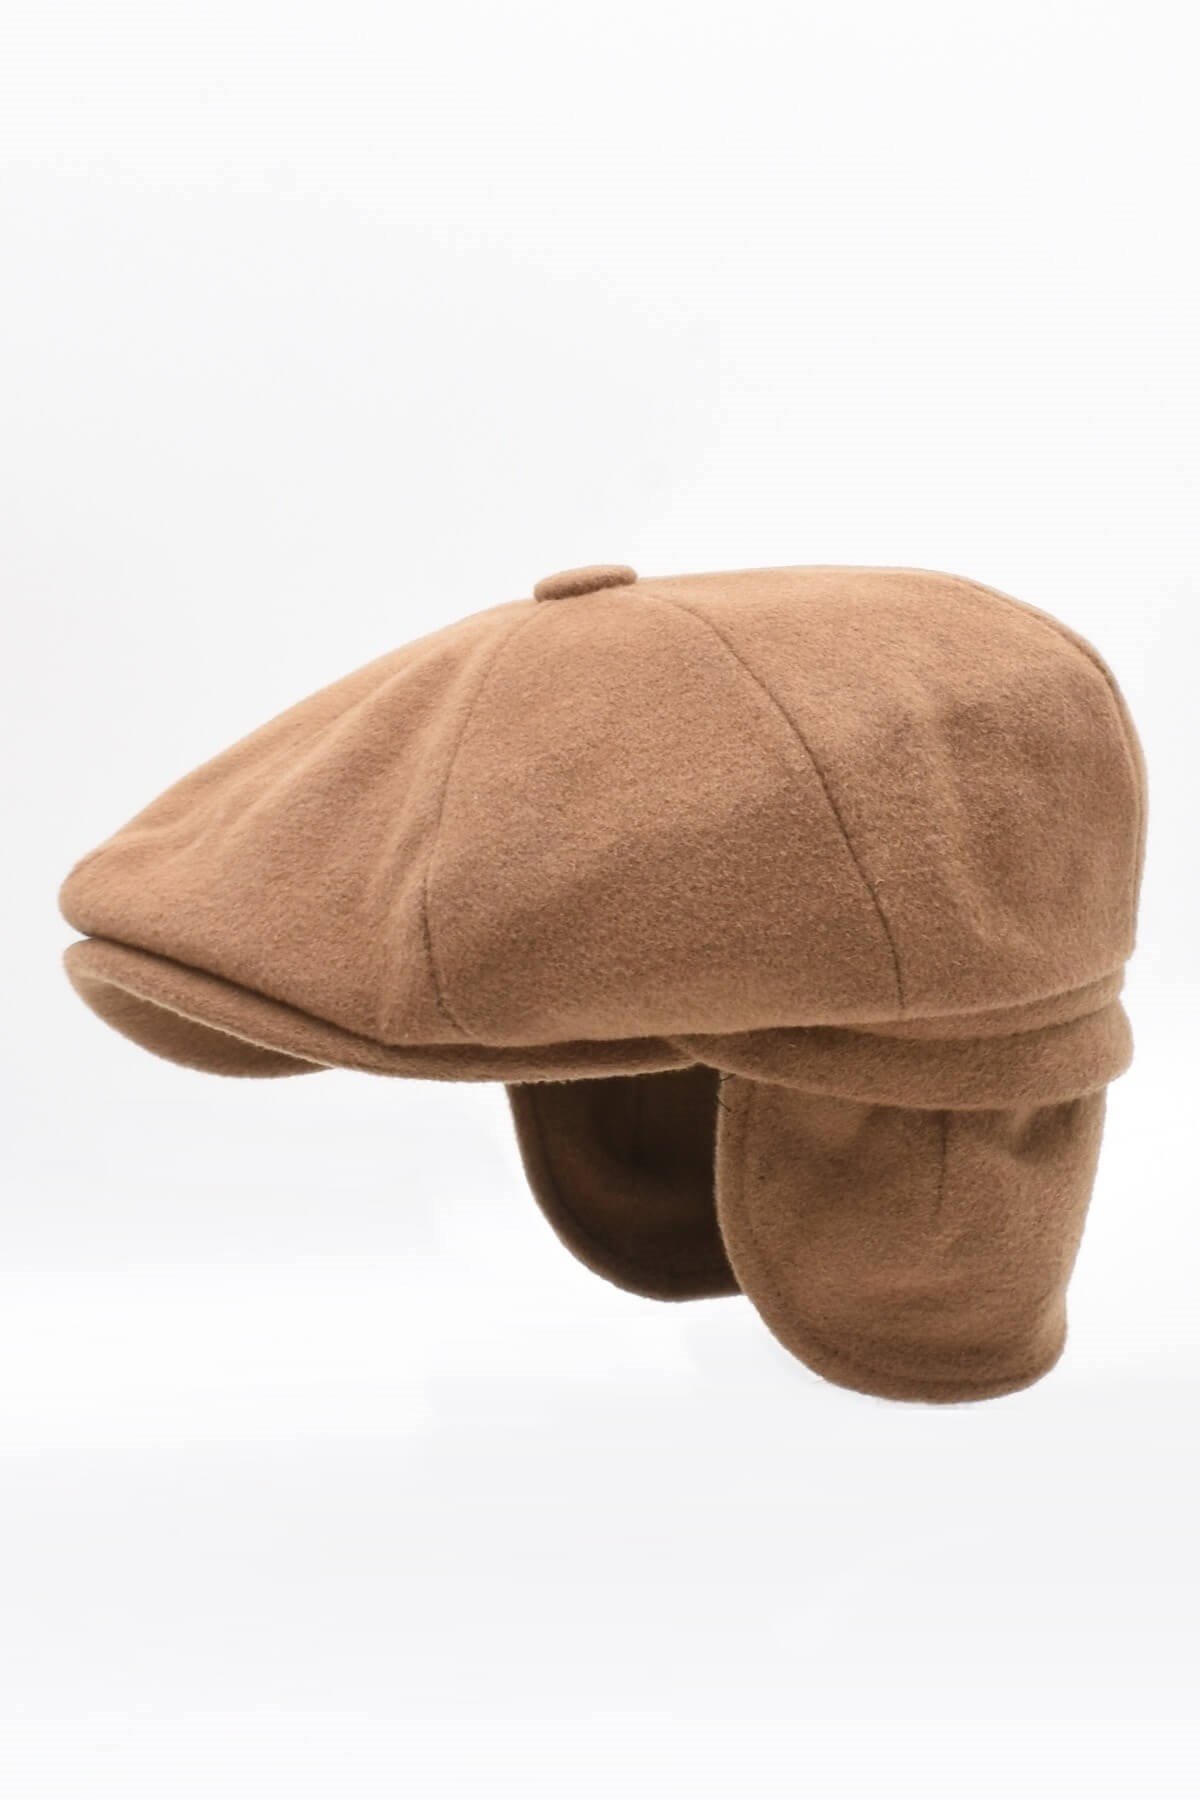 Külah Erkek %100 Kaşmir Yün Kışlık Kasket Kulaklı Şapka-Camel KLH7051